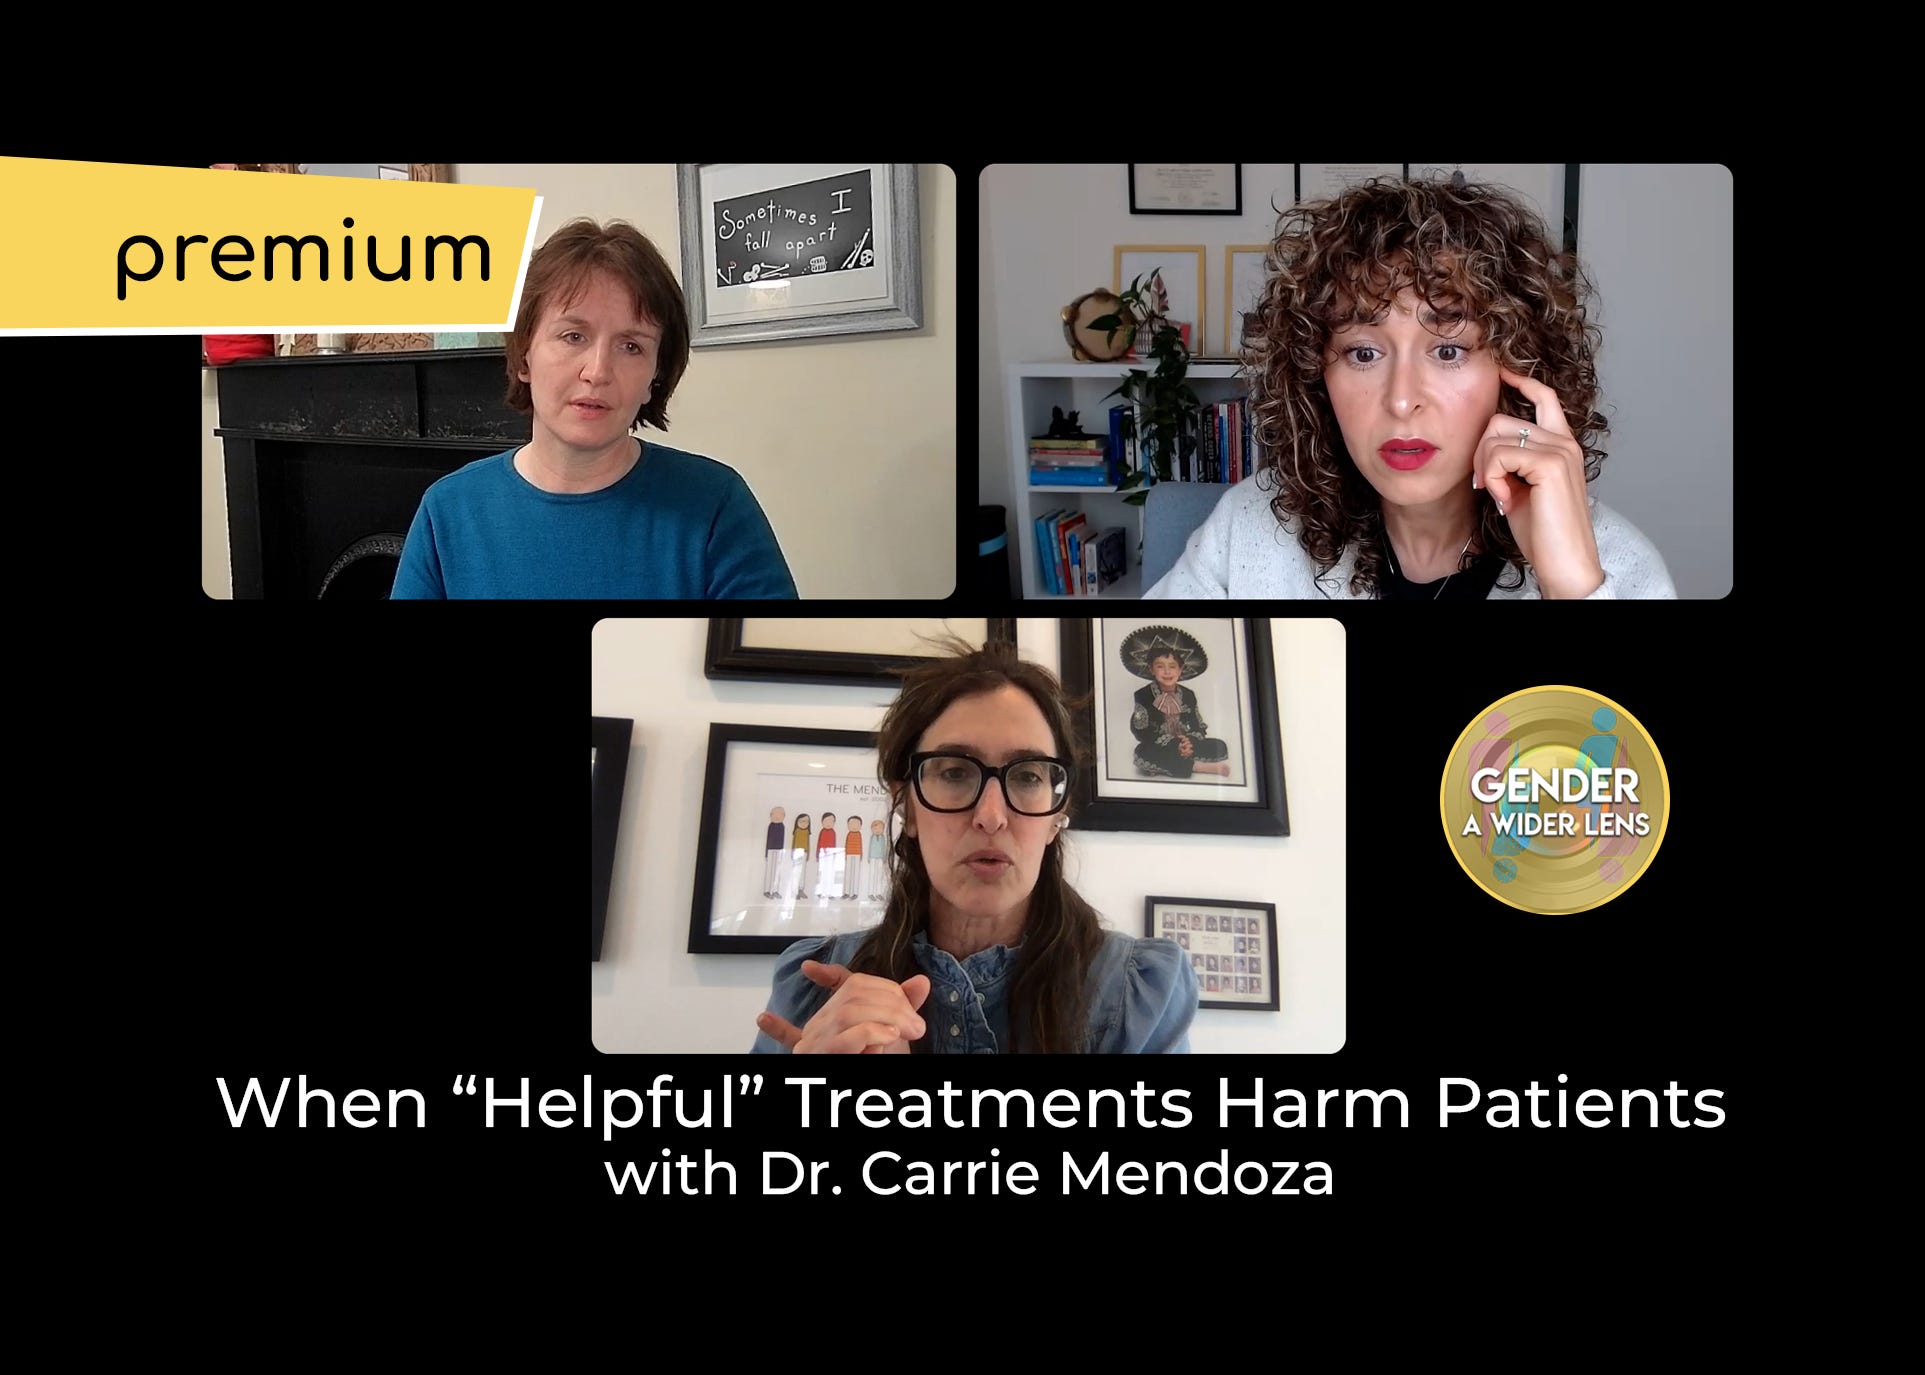 Premium: When "Helpful" Treatments Harm Patients